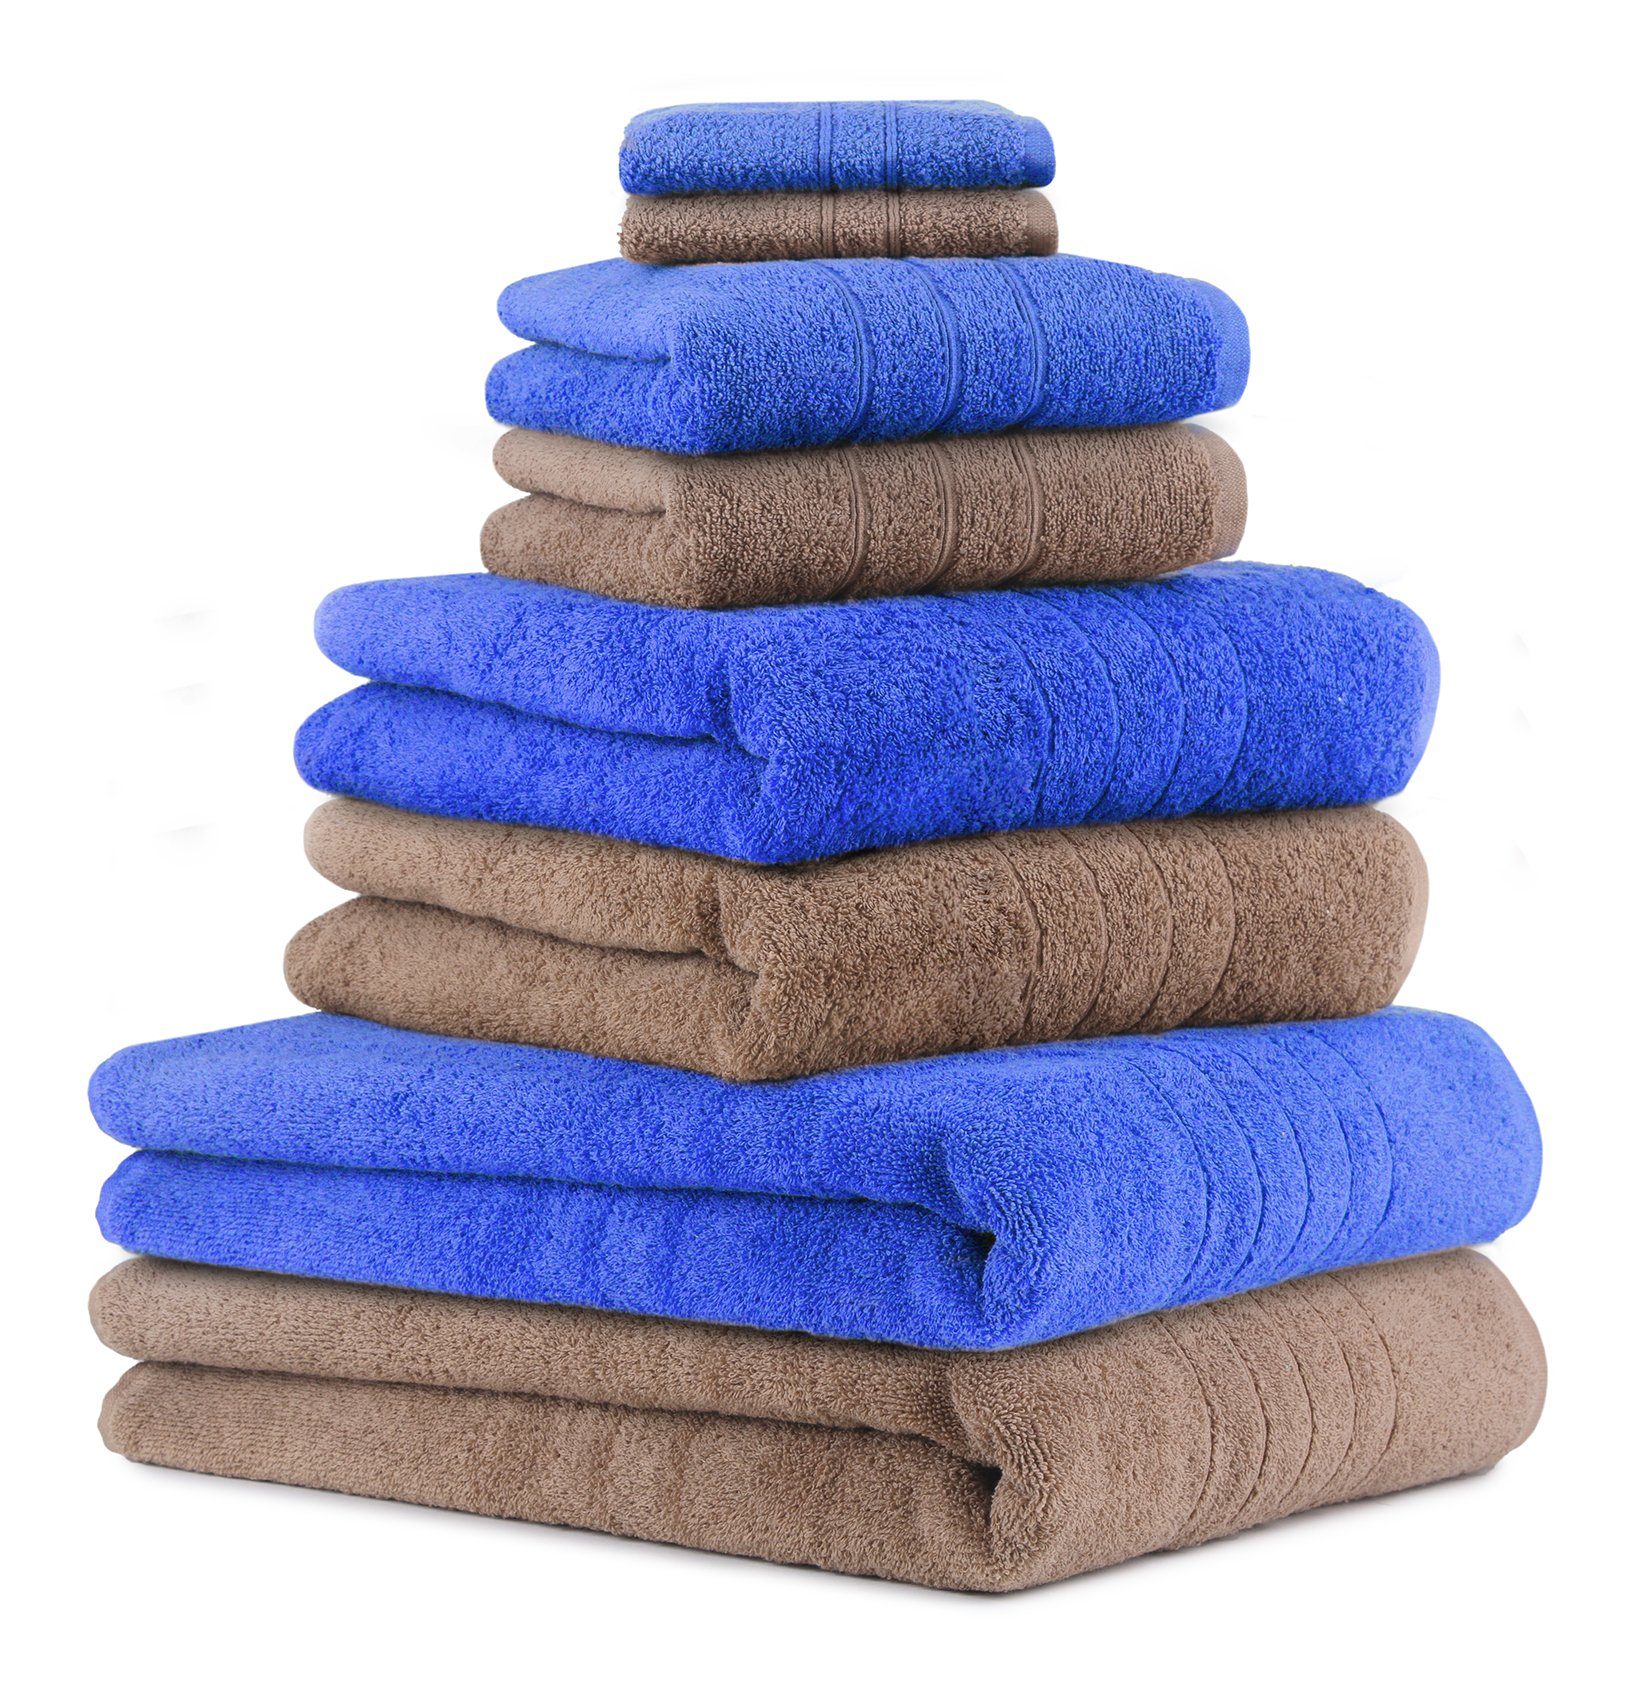 Heimtextilien Handtuch-Sets Betz Handtuch Set 8-TLG. Handtuch-Set Deluxe 100% Baumwolle 2 Badetücher 2 Duschtücher 2 Handtücher 